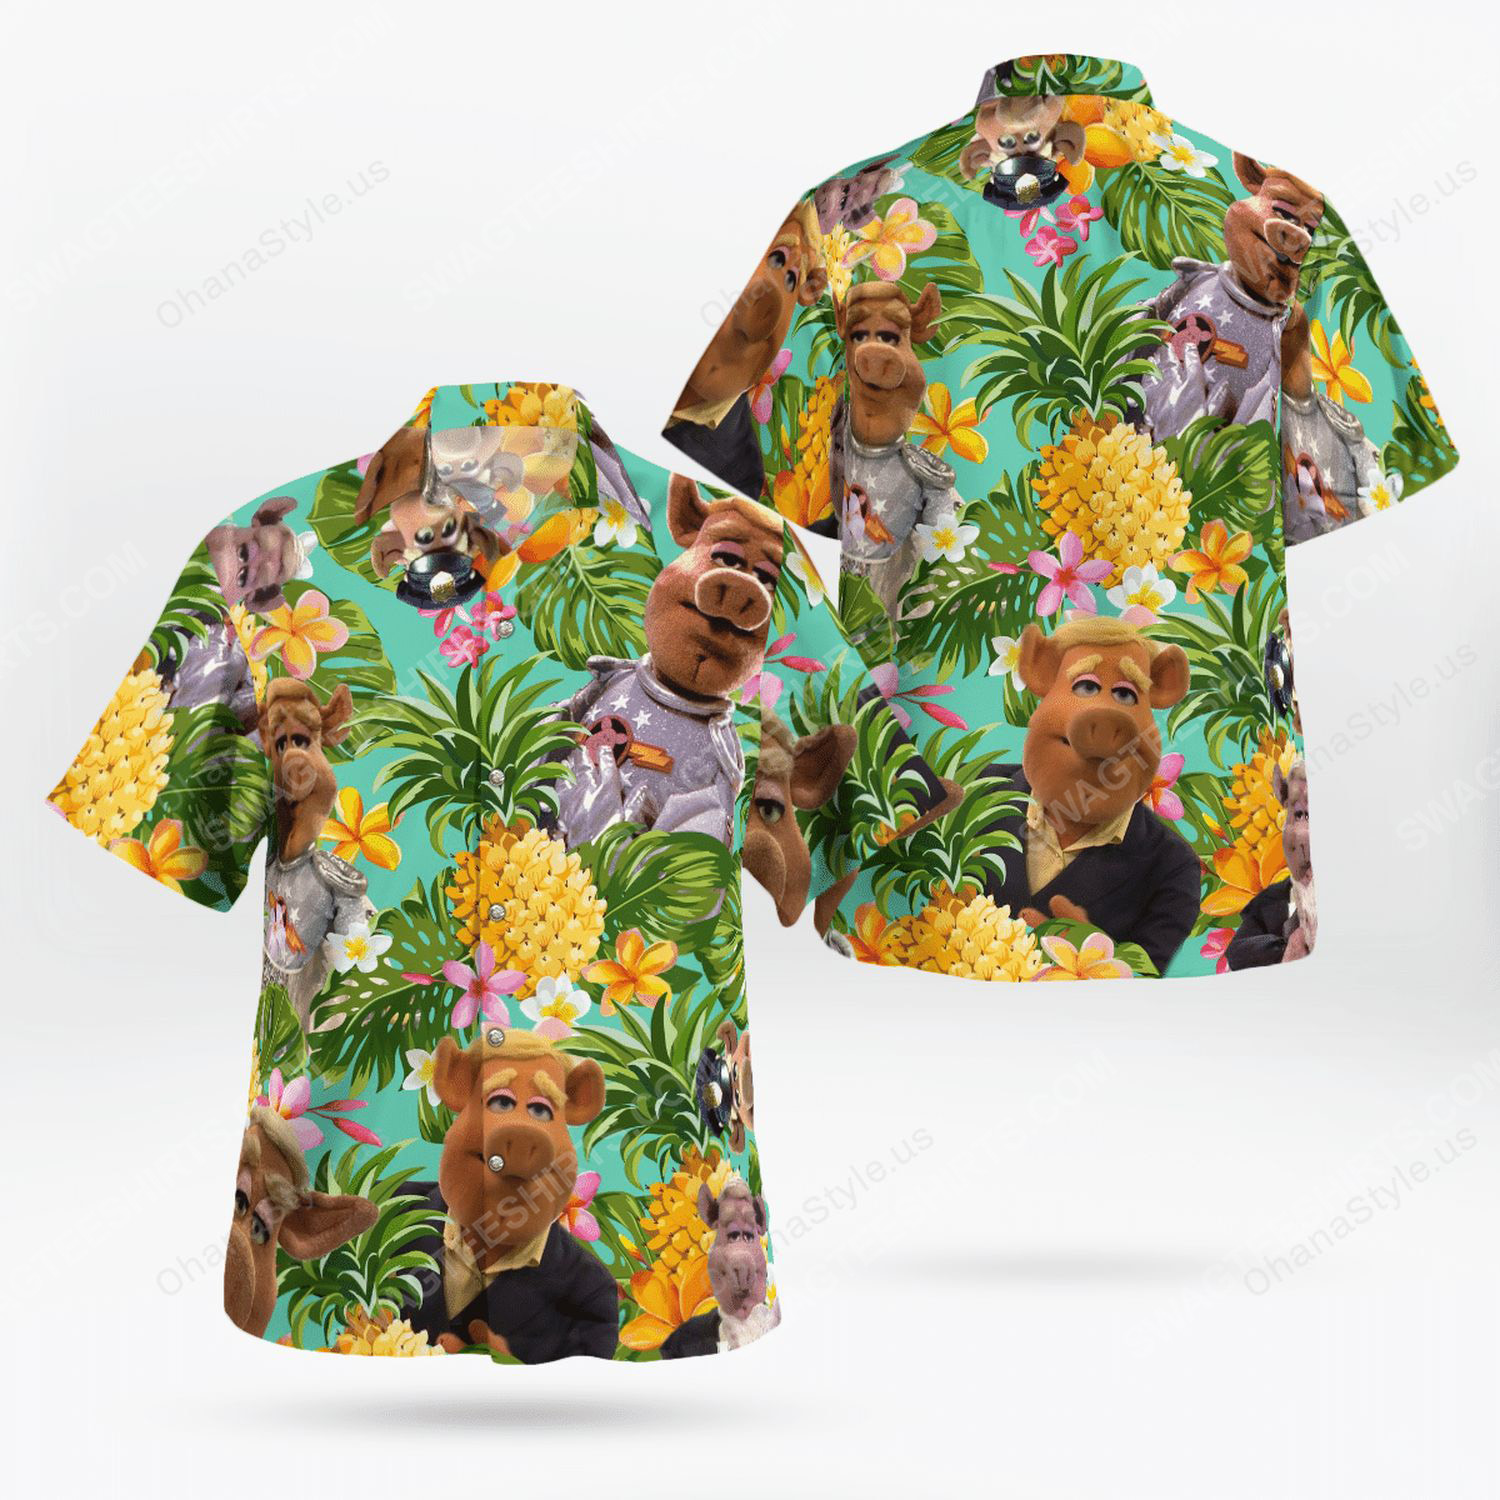 The muppet show link hogthrob tropical hawaiian shirt 1